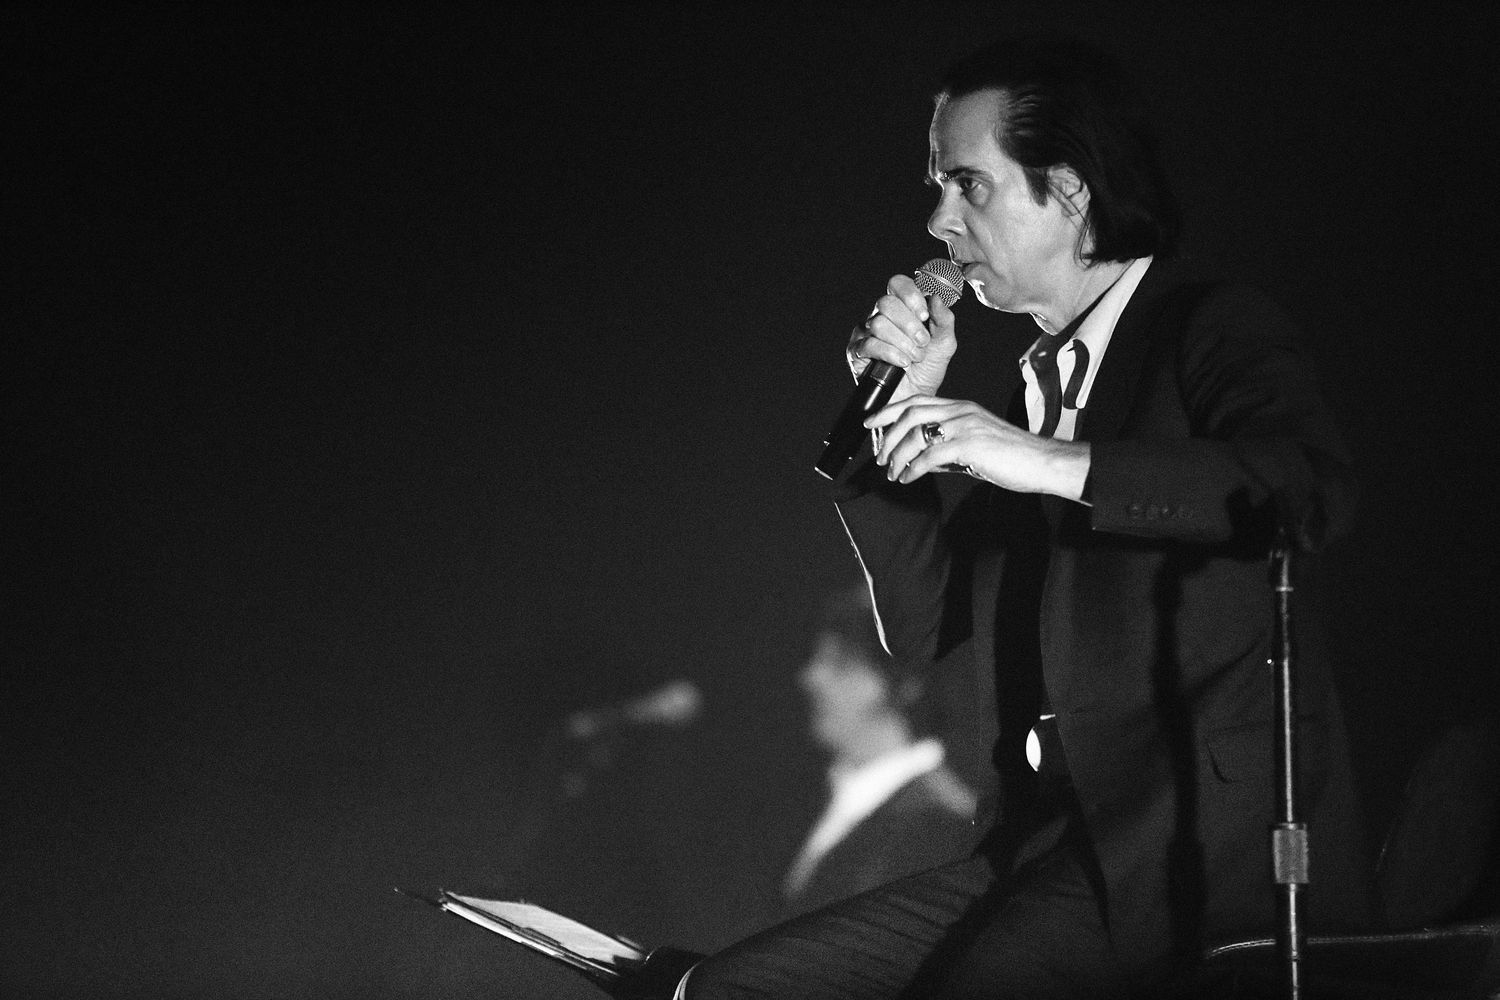 Début de prêche sépulcral pour Nick Cave, qui exorcise sur son dernier album "Skeleton Tree" la douleur du décès de son fils.